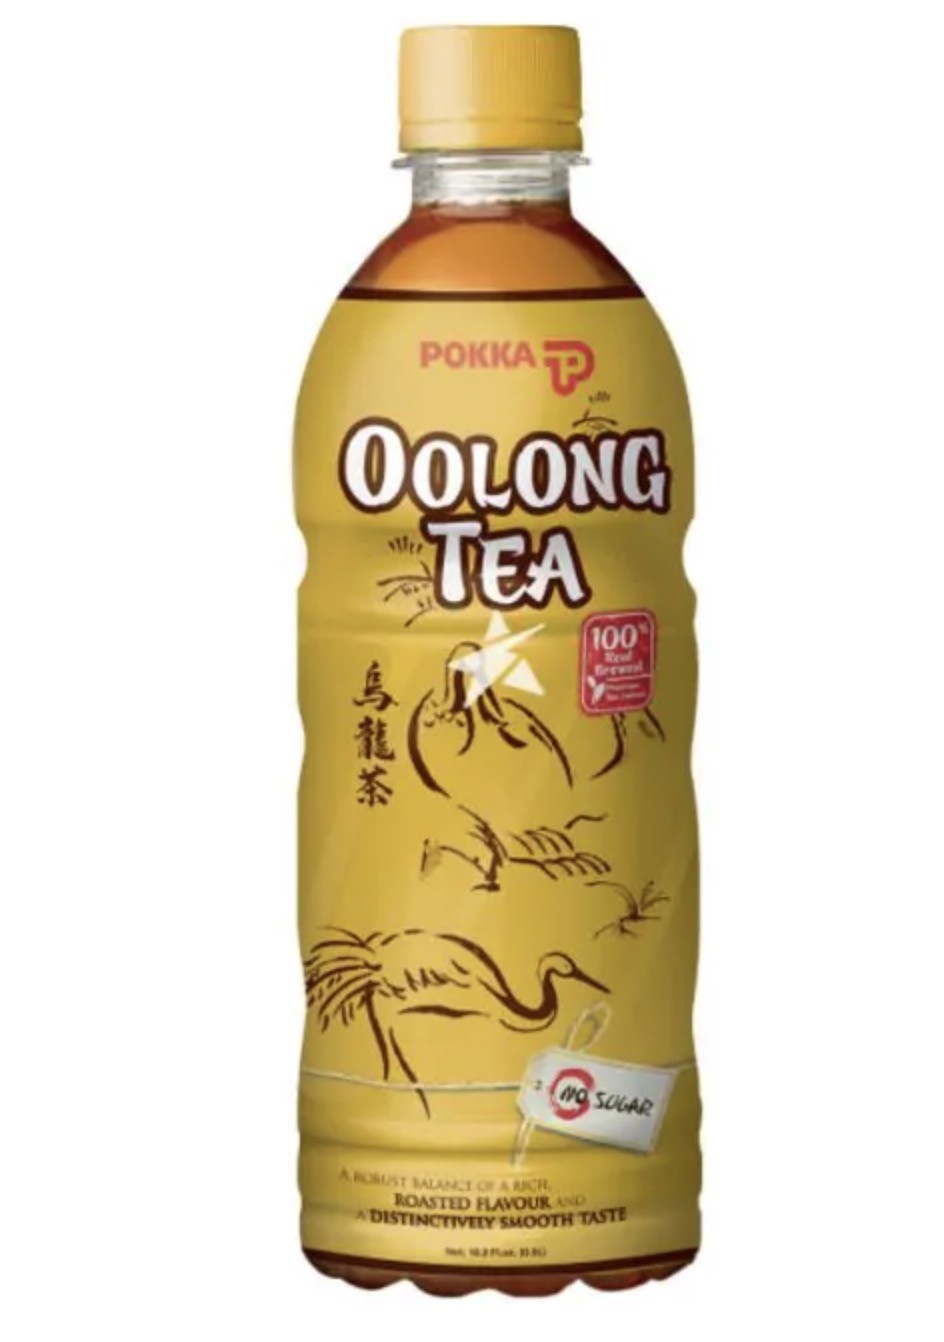 Pokka Oolong Tea (No Sugar) 500ml